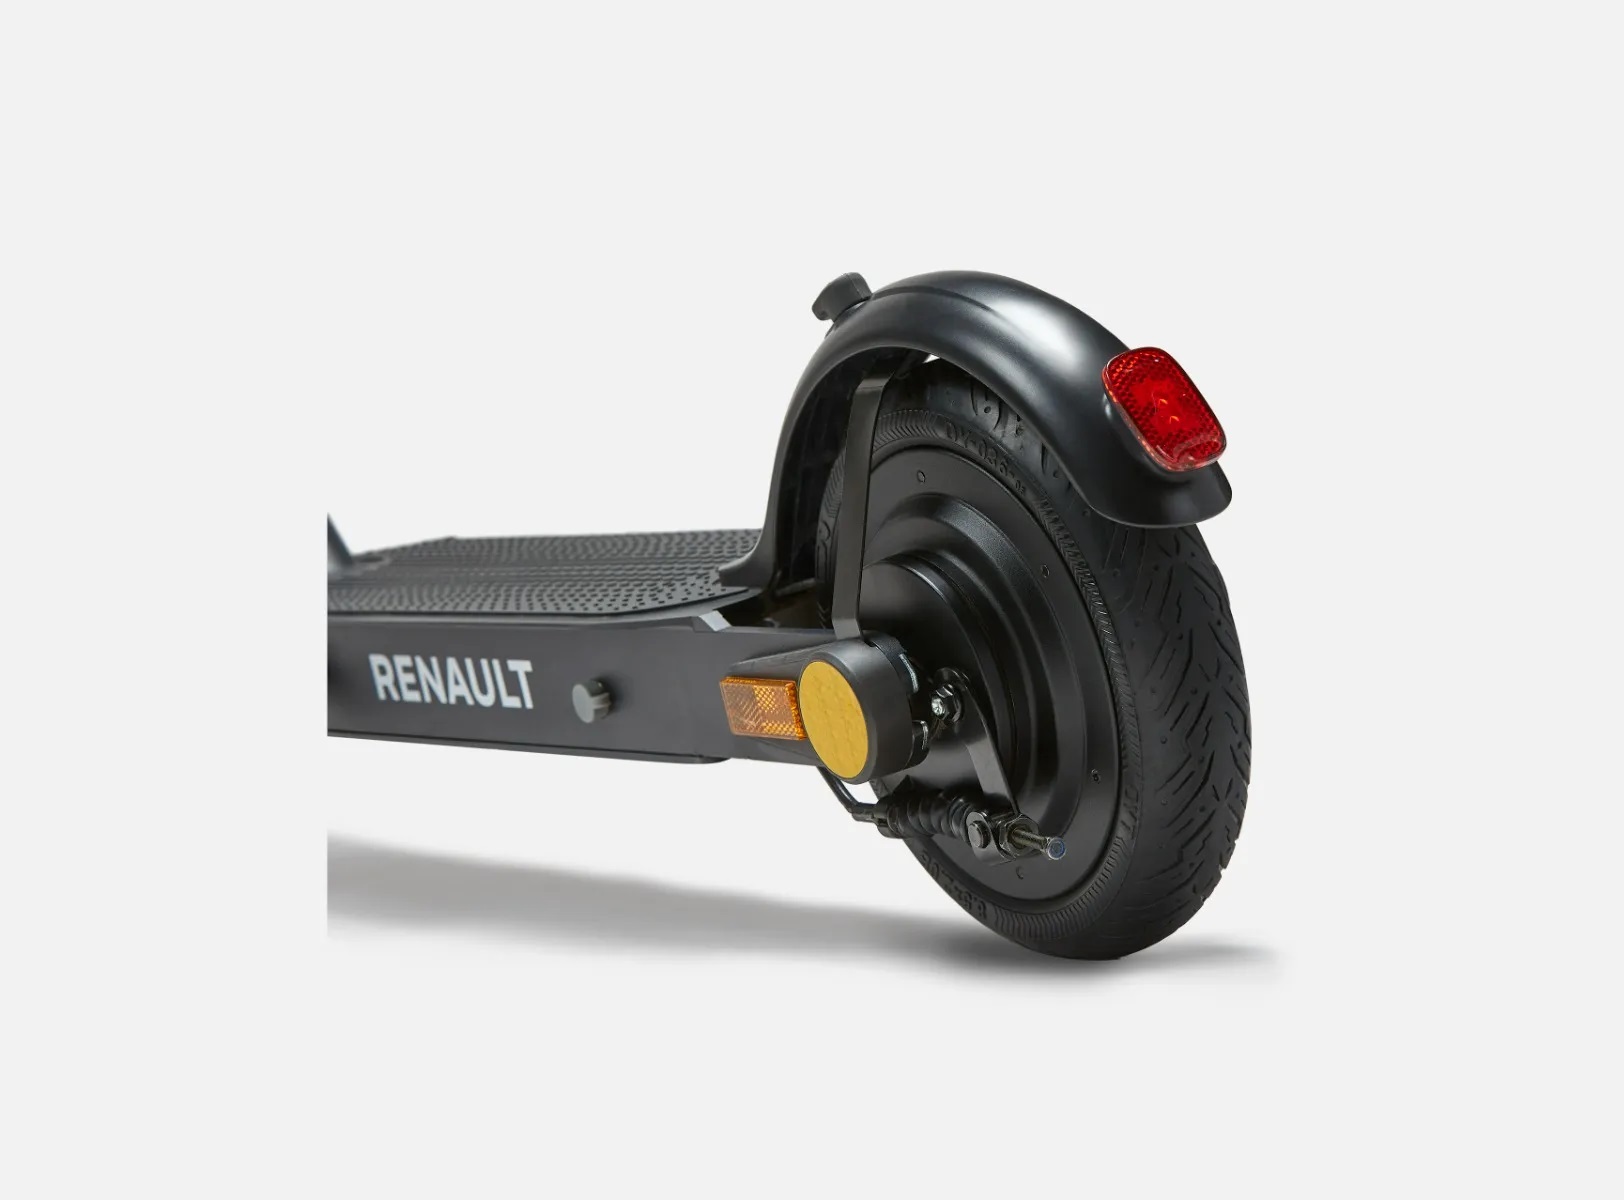 Un patinete eléctrico de tres ruedas con asistencia al equilibrio, lo  último de Honda